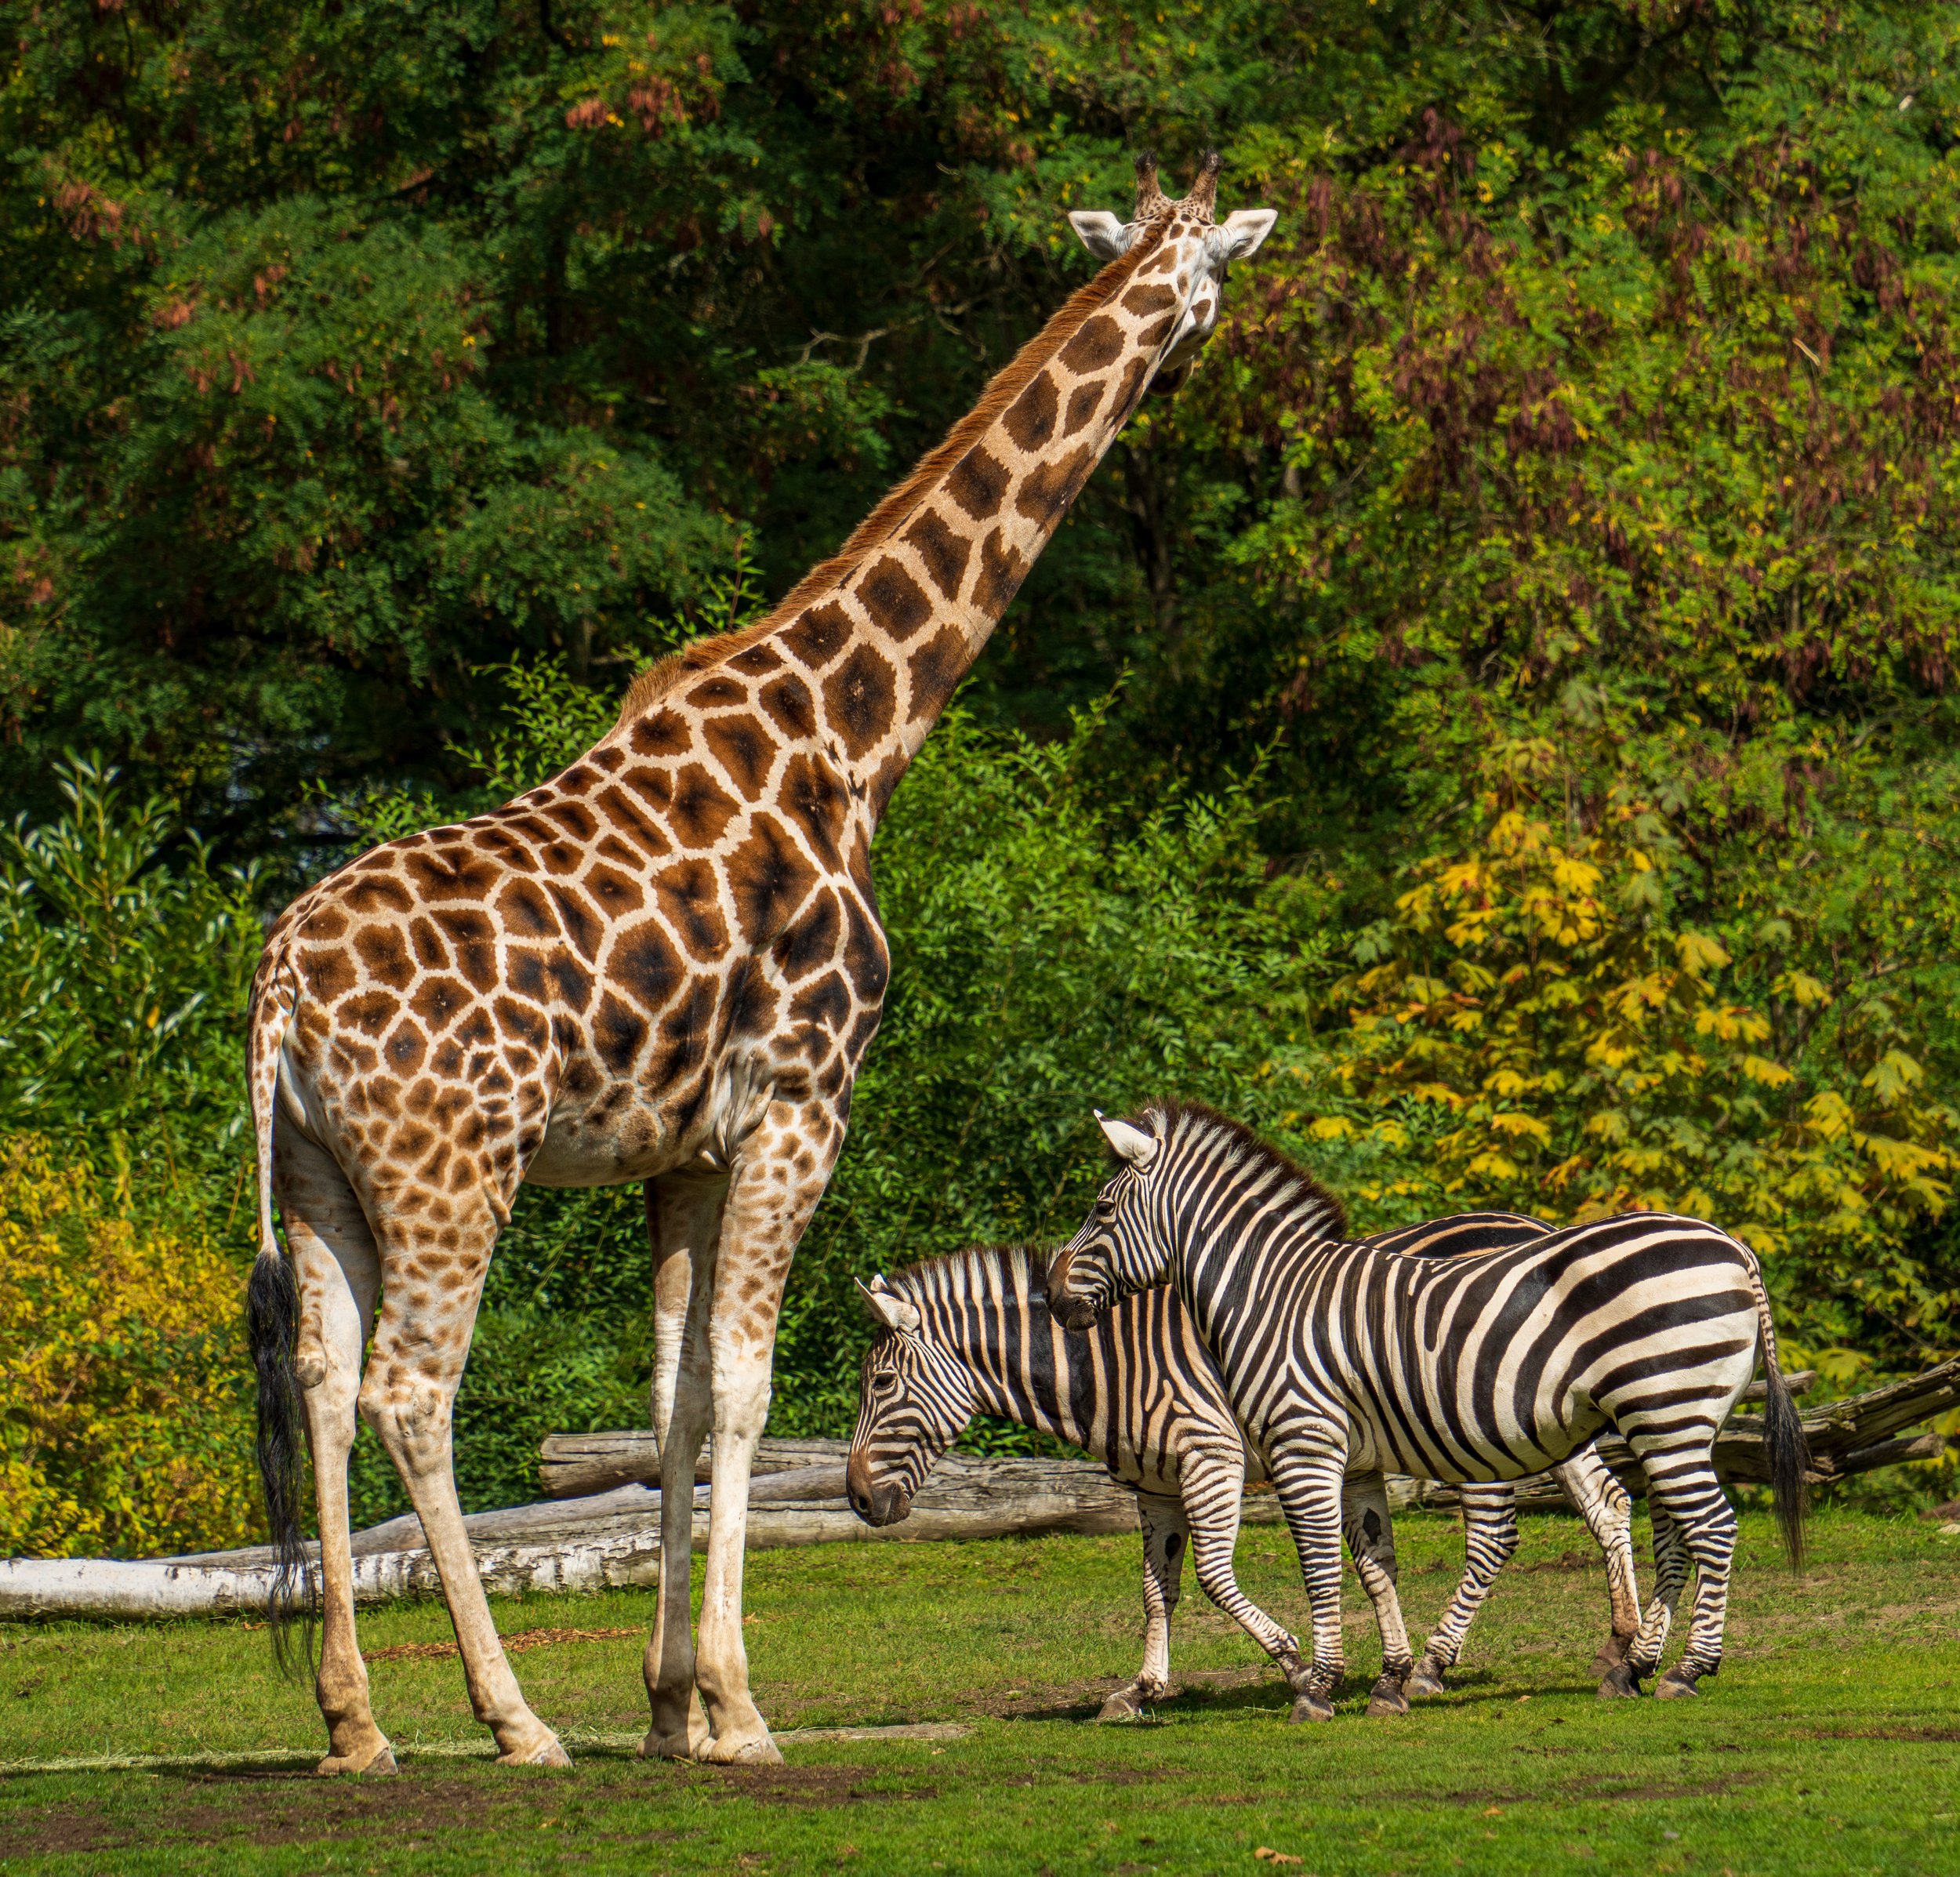  Some zebras pass by a giraffe 